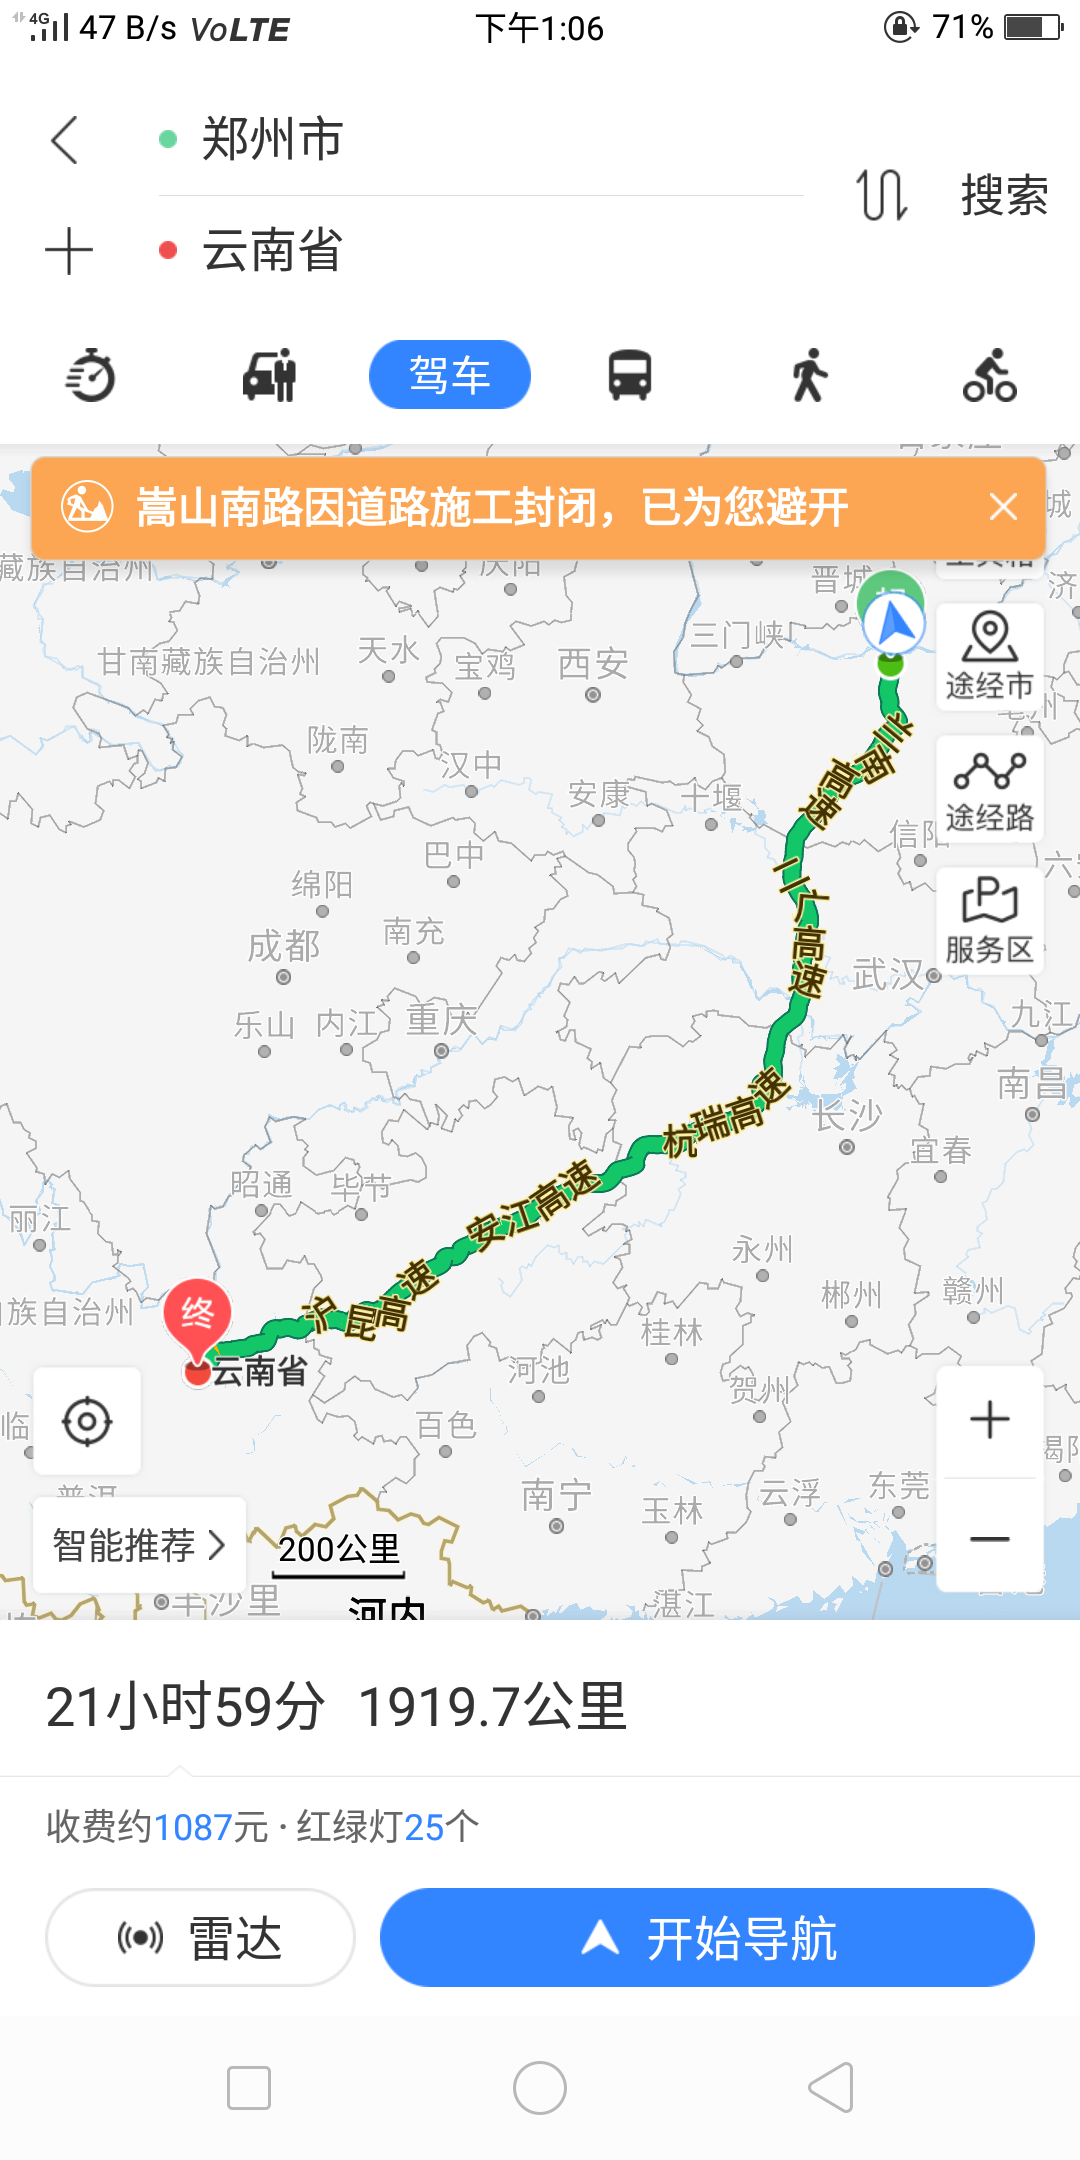 如何安排云南旅游路线：如何自费安排云南旅游路线？ 